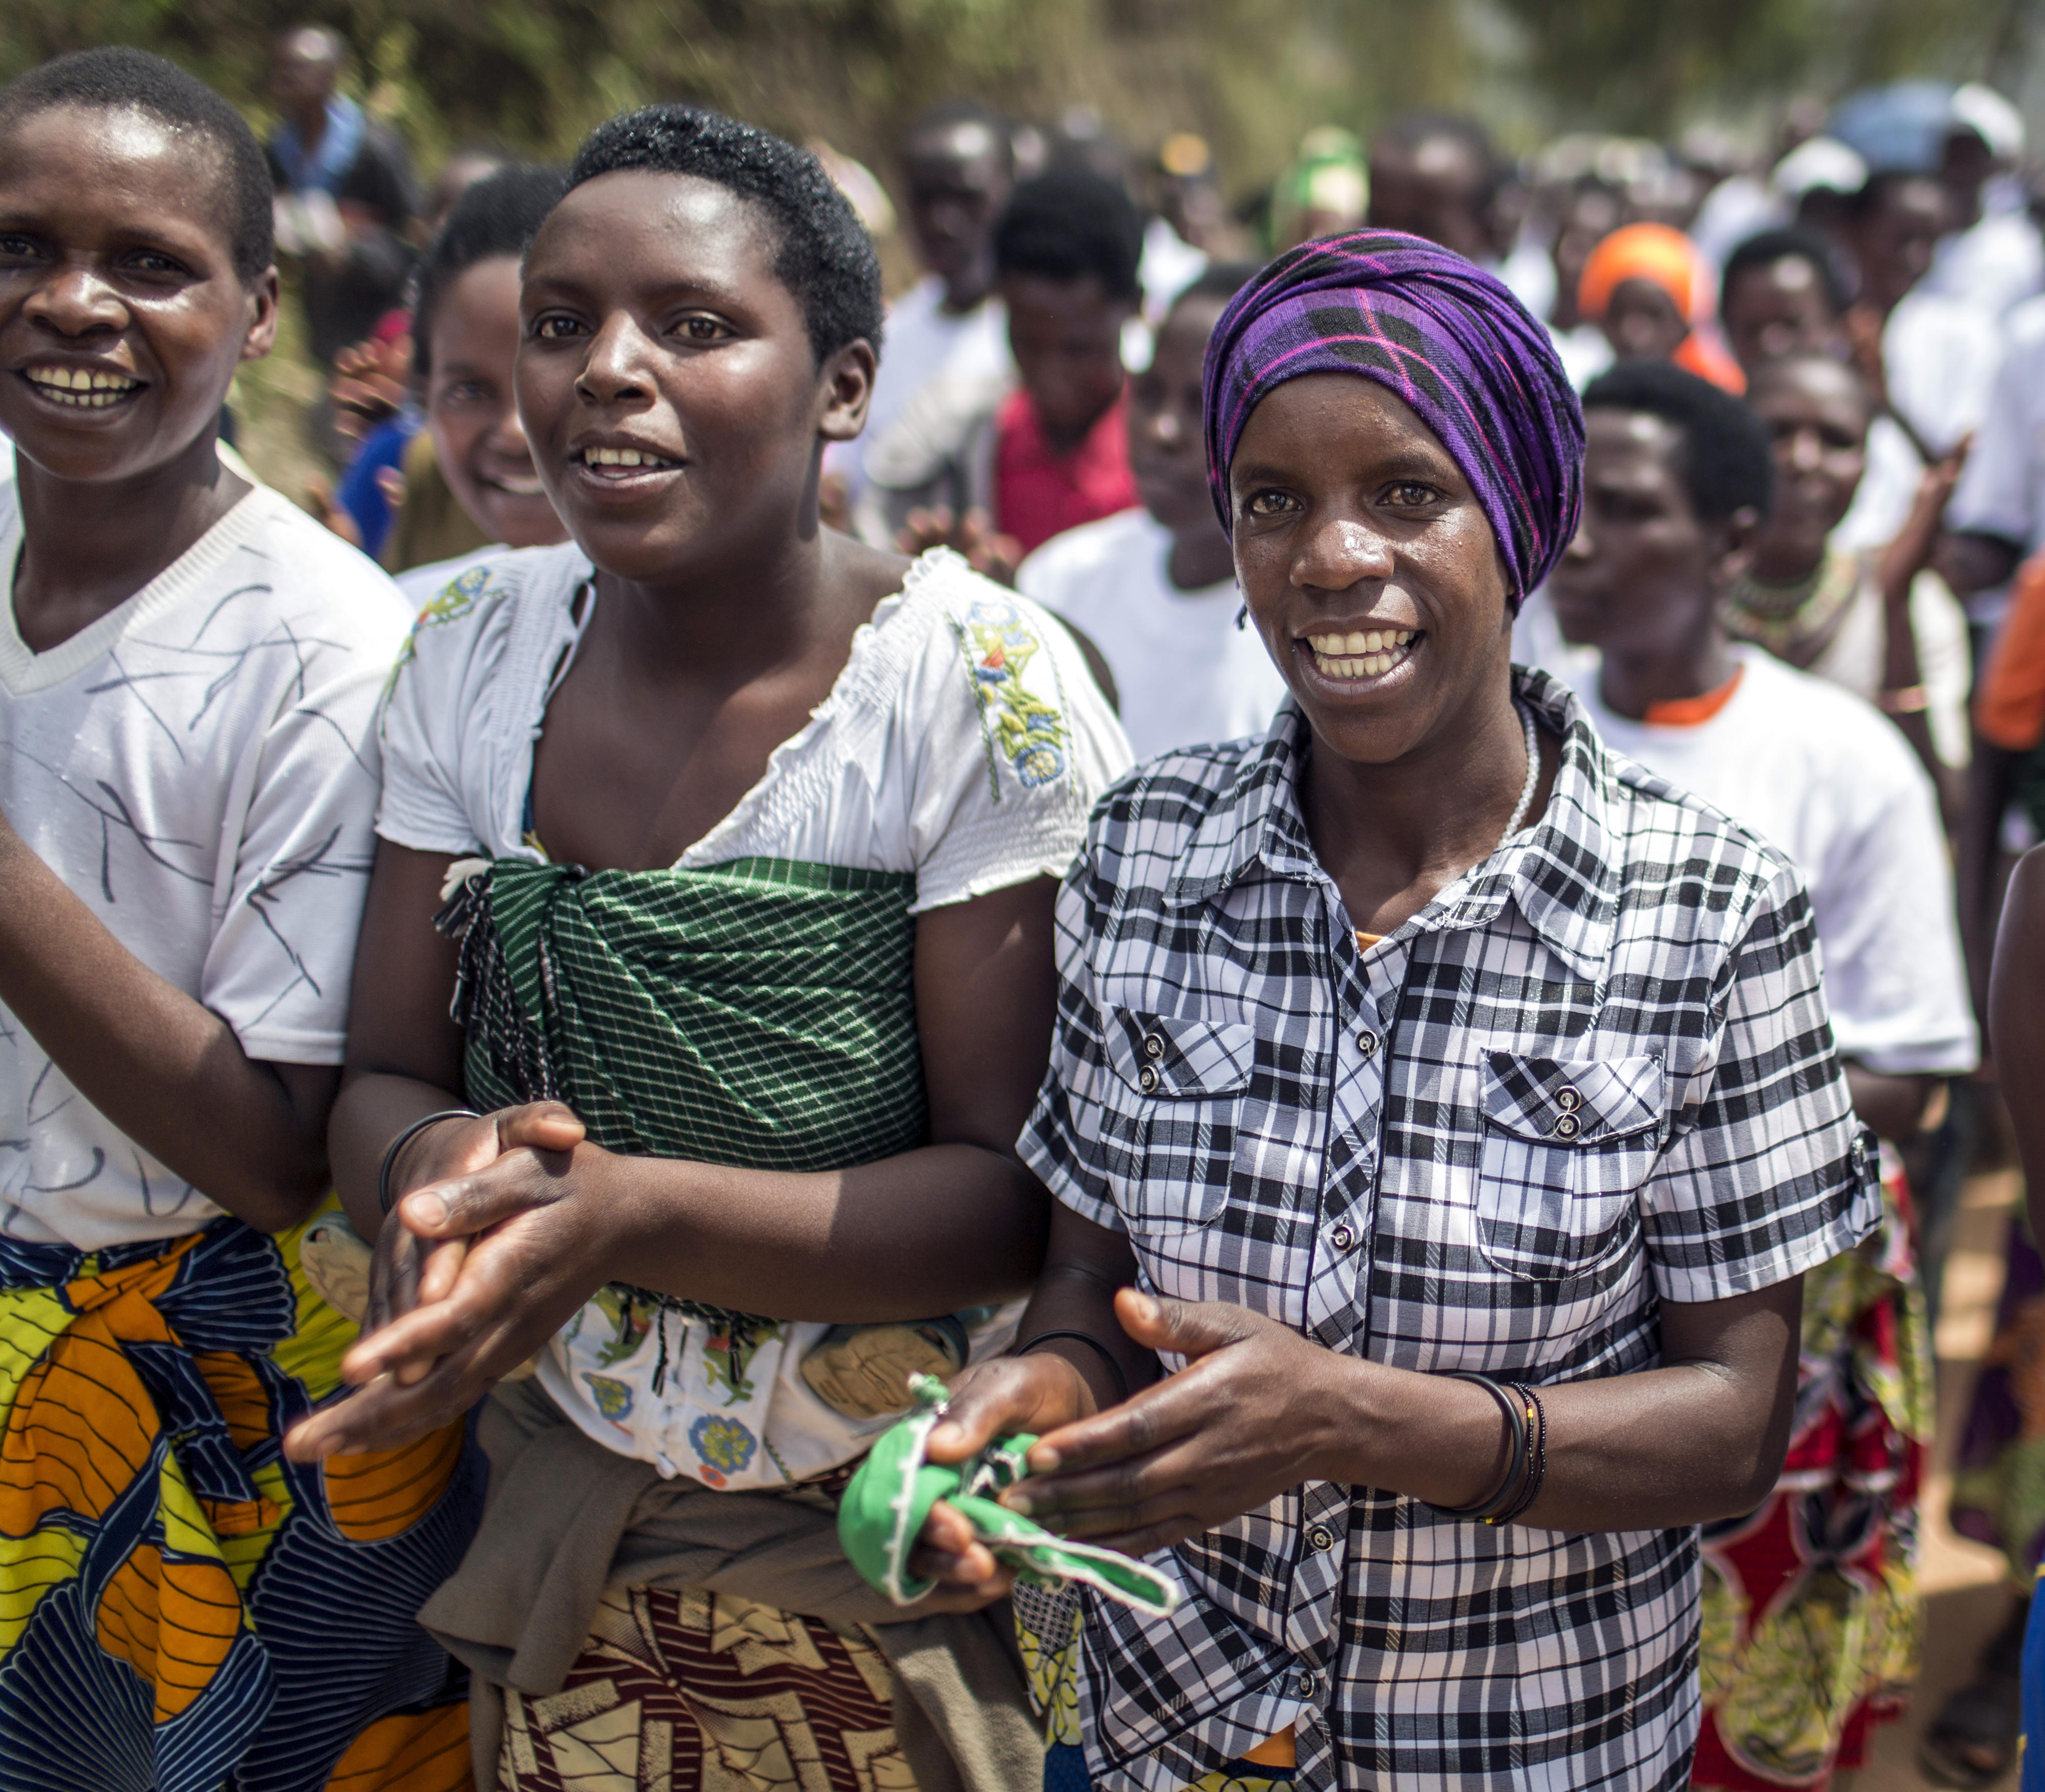 Marsch der Bevölkerung von Musebeya zu einem öffentlichen Dialog über die Verbesserung der politischen Teilhabe von Bürgern, Ruanda 2014